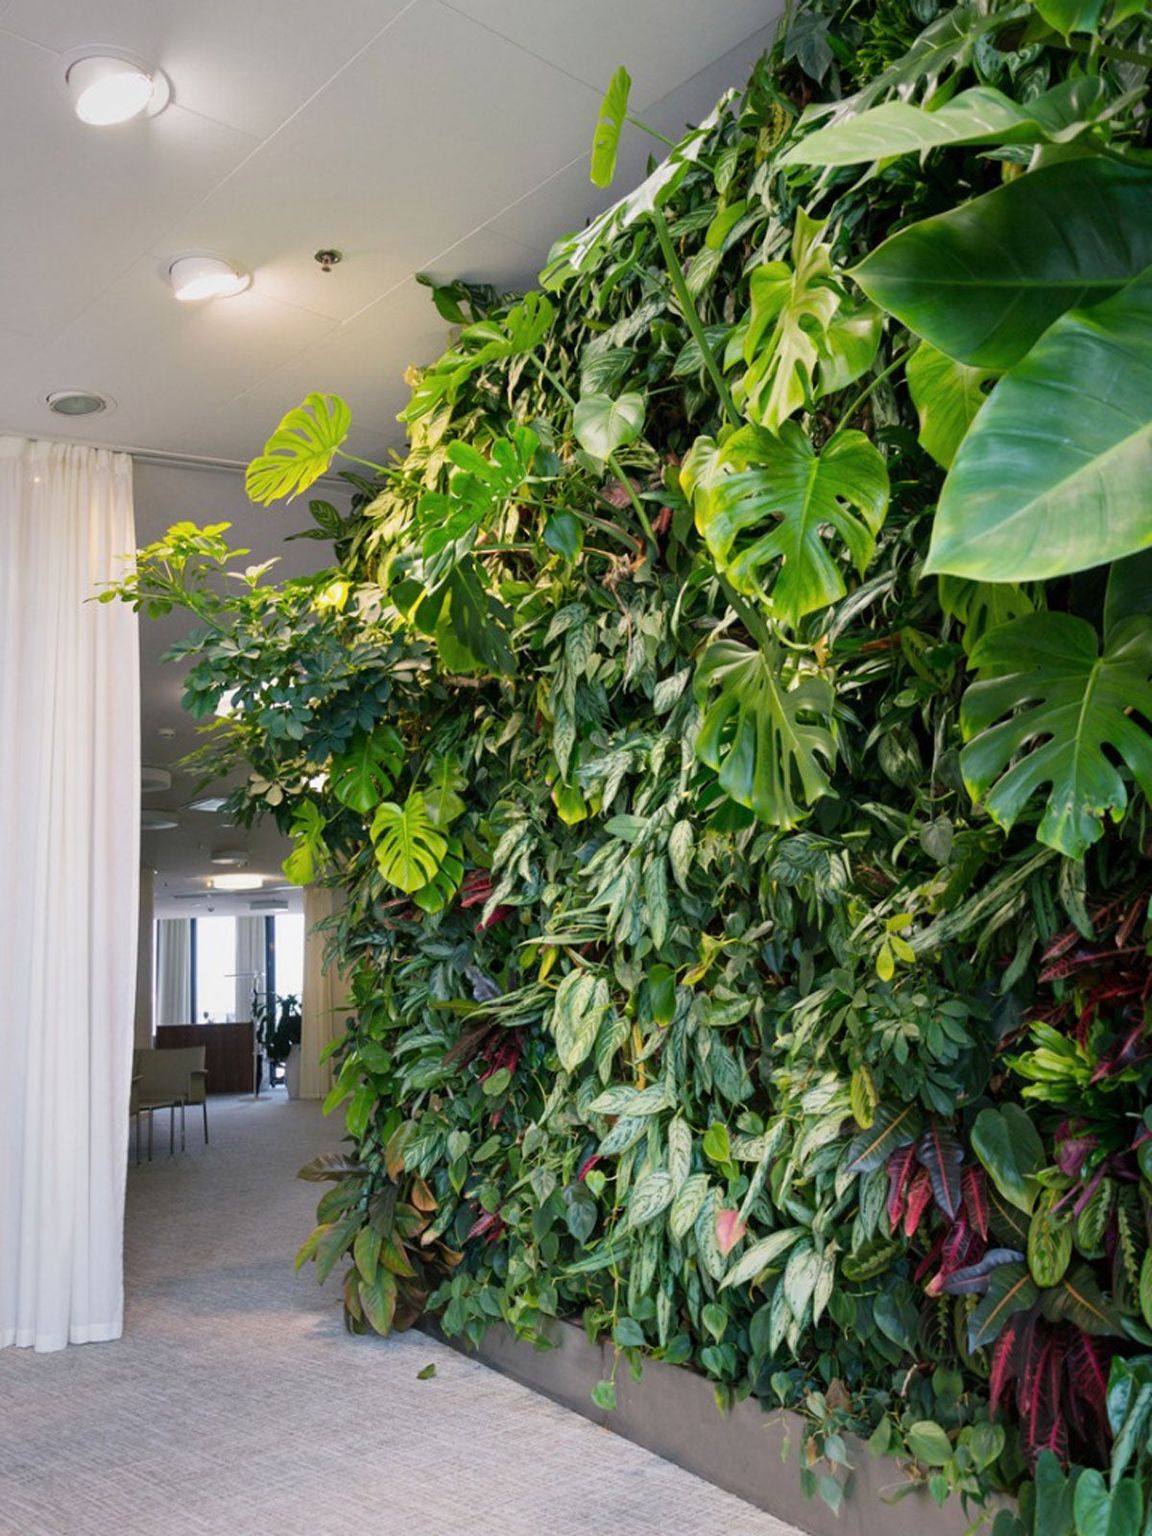 Plants For An Indoor Wall: Houseplants For Indoor Vertical Gardens